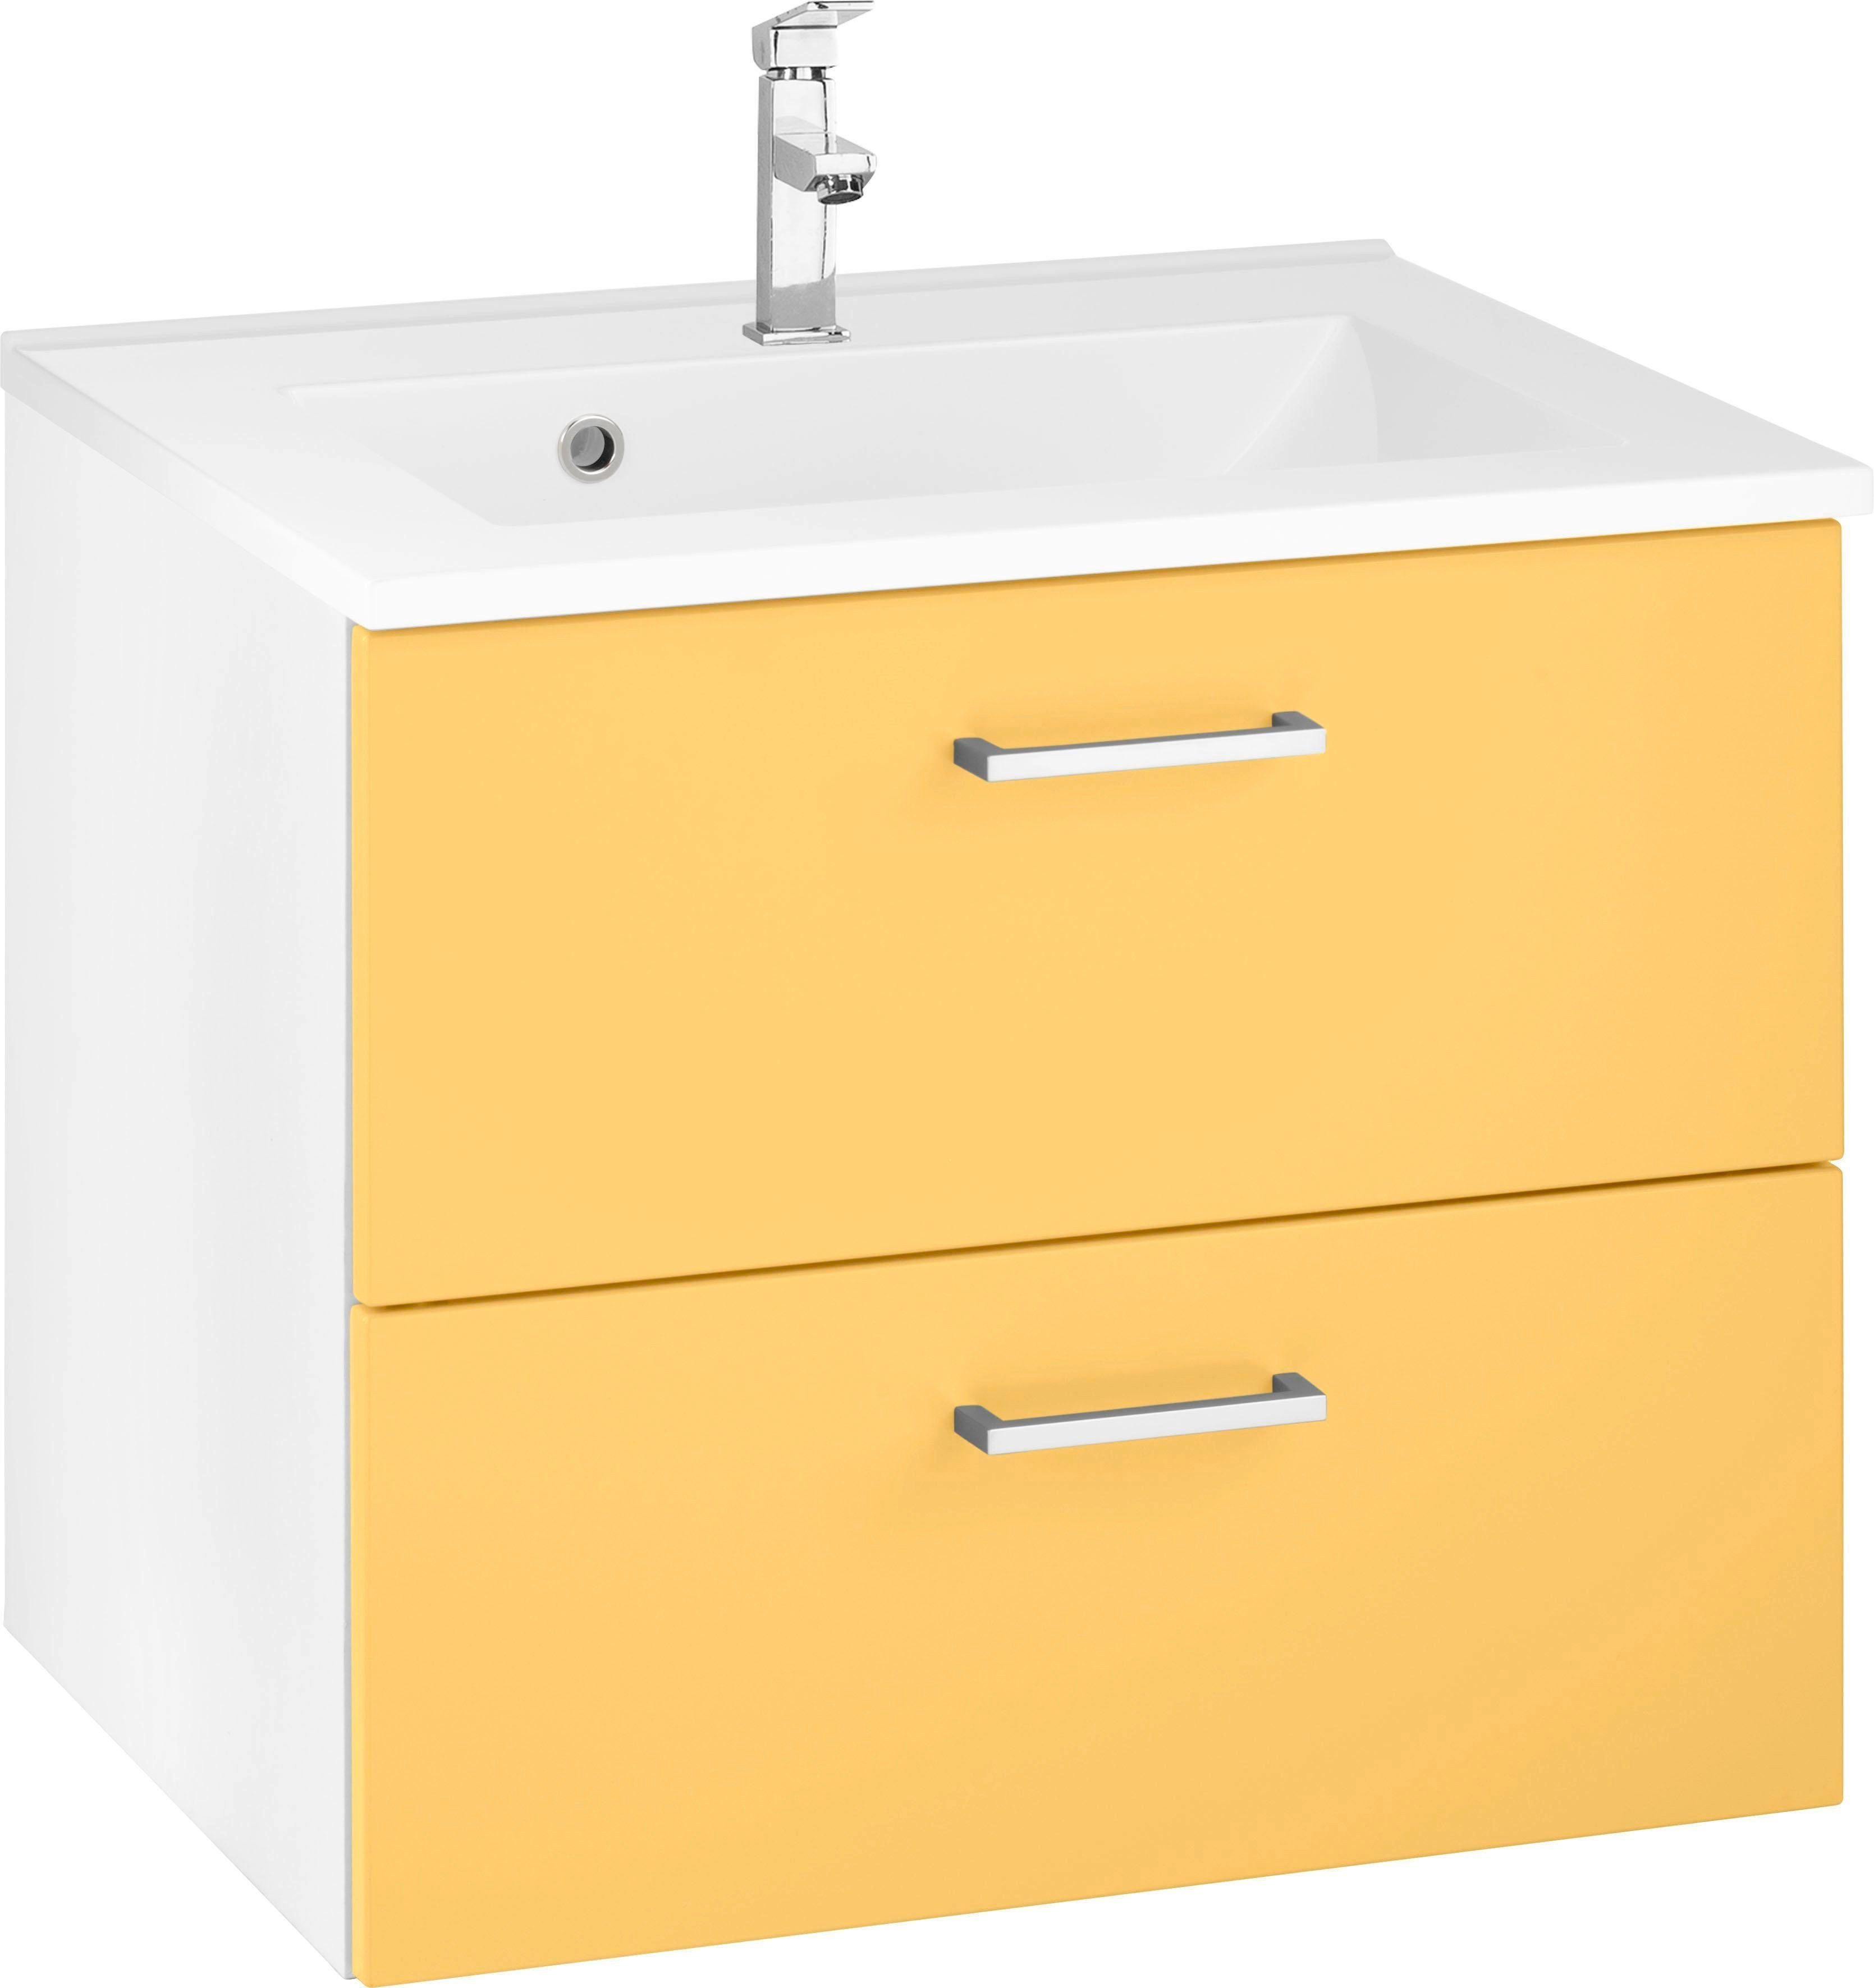 HELD MÖBEL Waschbeckenunterschrank gelb/gelb/weiß inkl. Breite Ribera Waschtisch 60 cm Waschbecken, Badmöbel